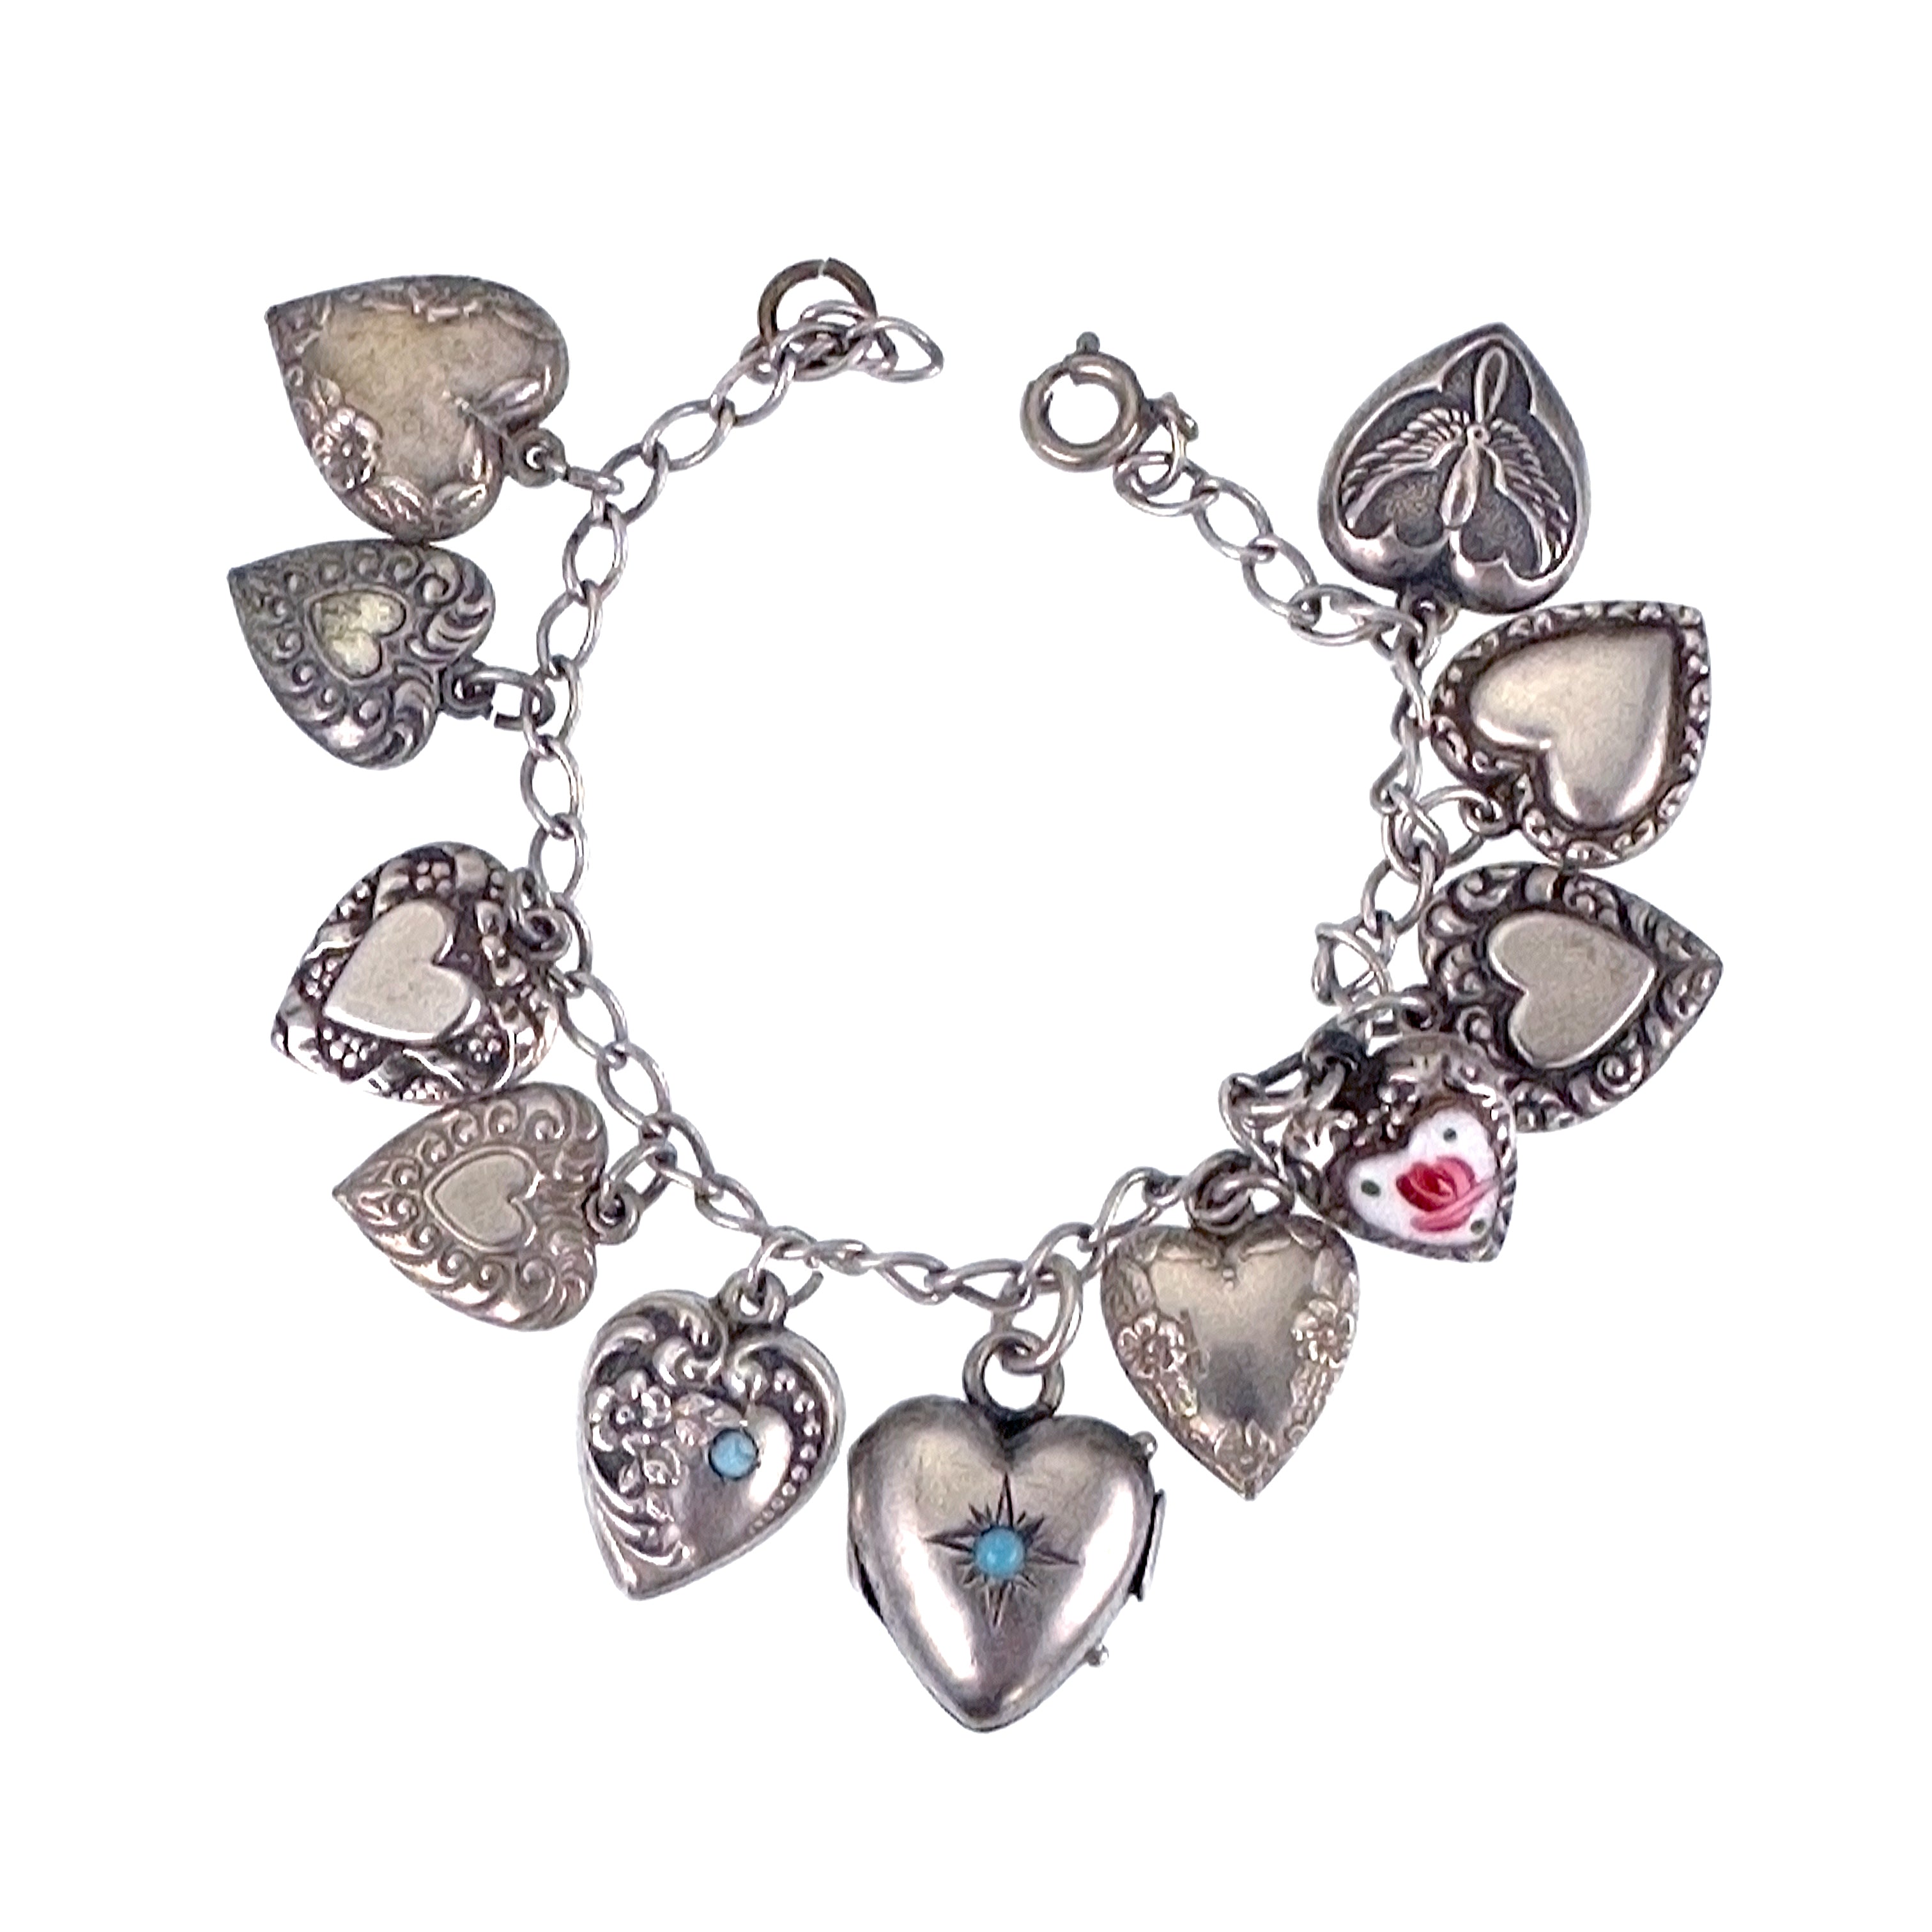 kelistom Women's Love Heart Charm Bracelet